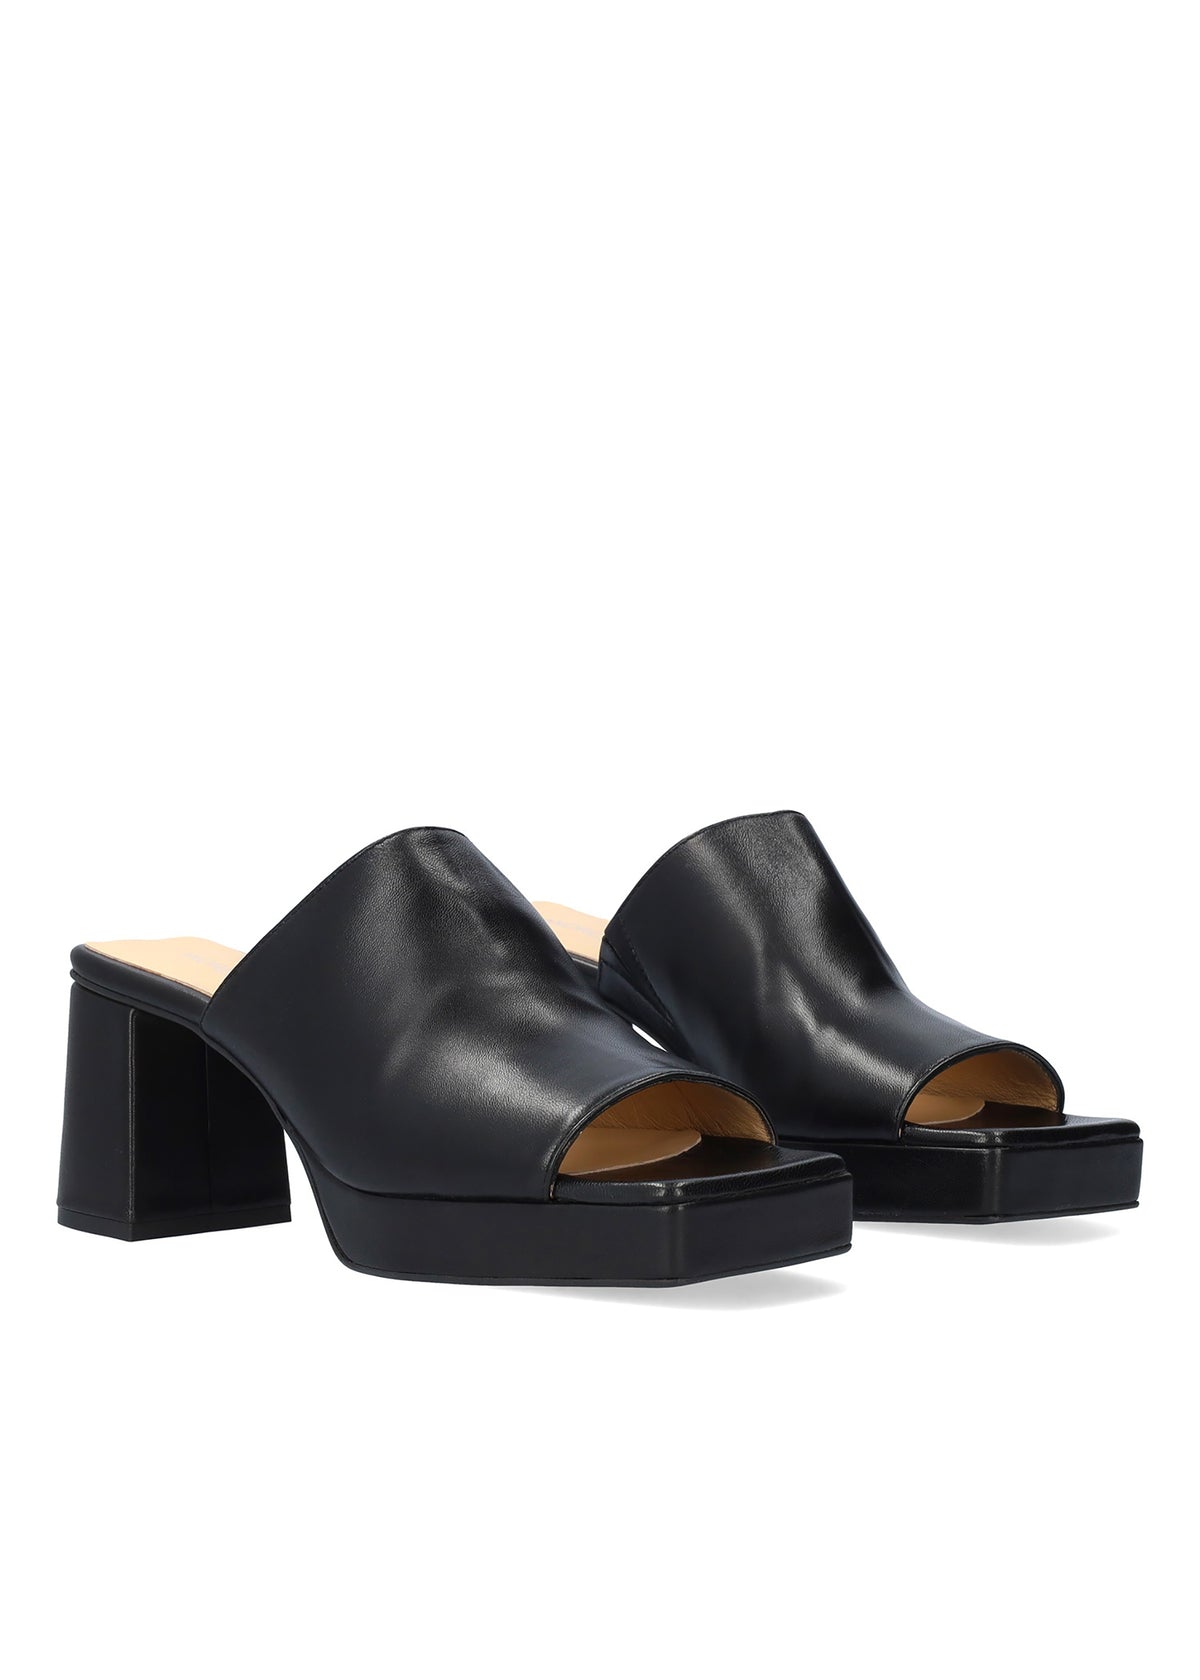 Stiletto heel sandals - Adara, black leather